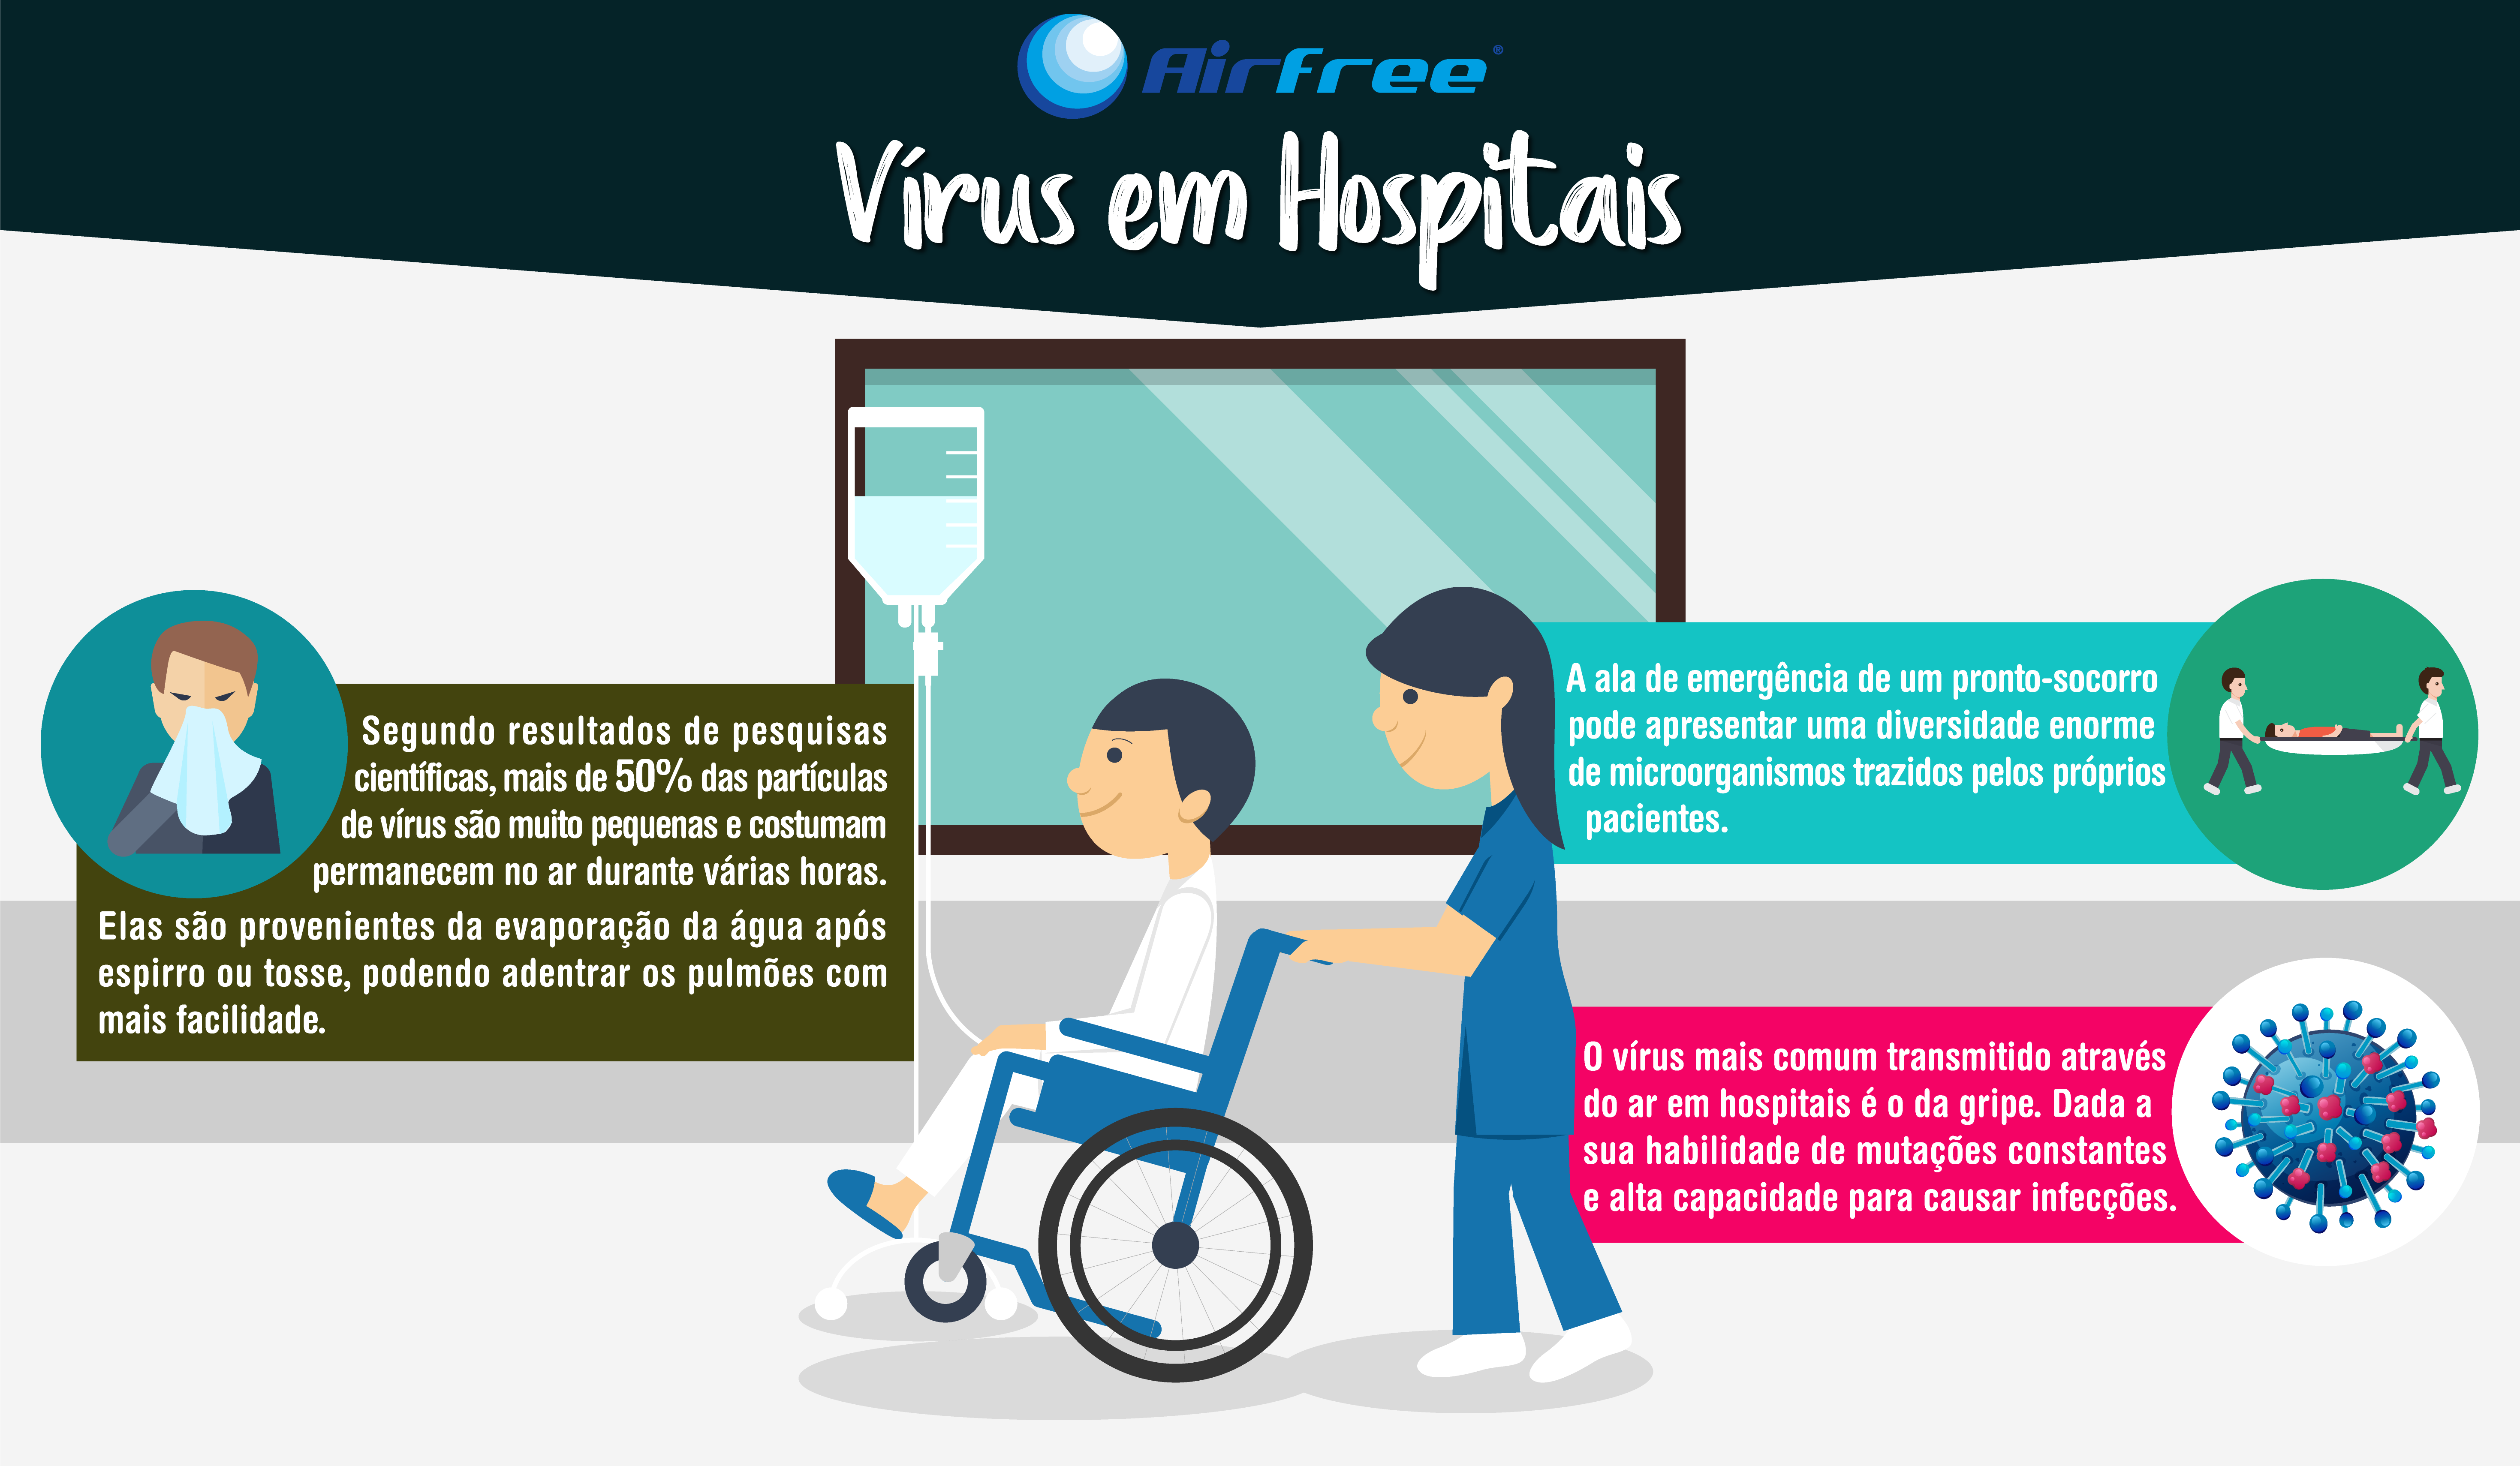 Um hospital é o ambiente interno onde se devem assumir medidas de maior controle de transmissão de vírus através do ar. Os cuidados vão desde as salas de espera, até às alas de internamento.